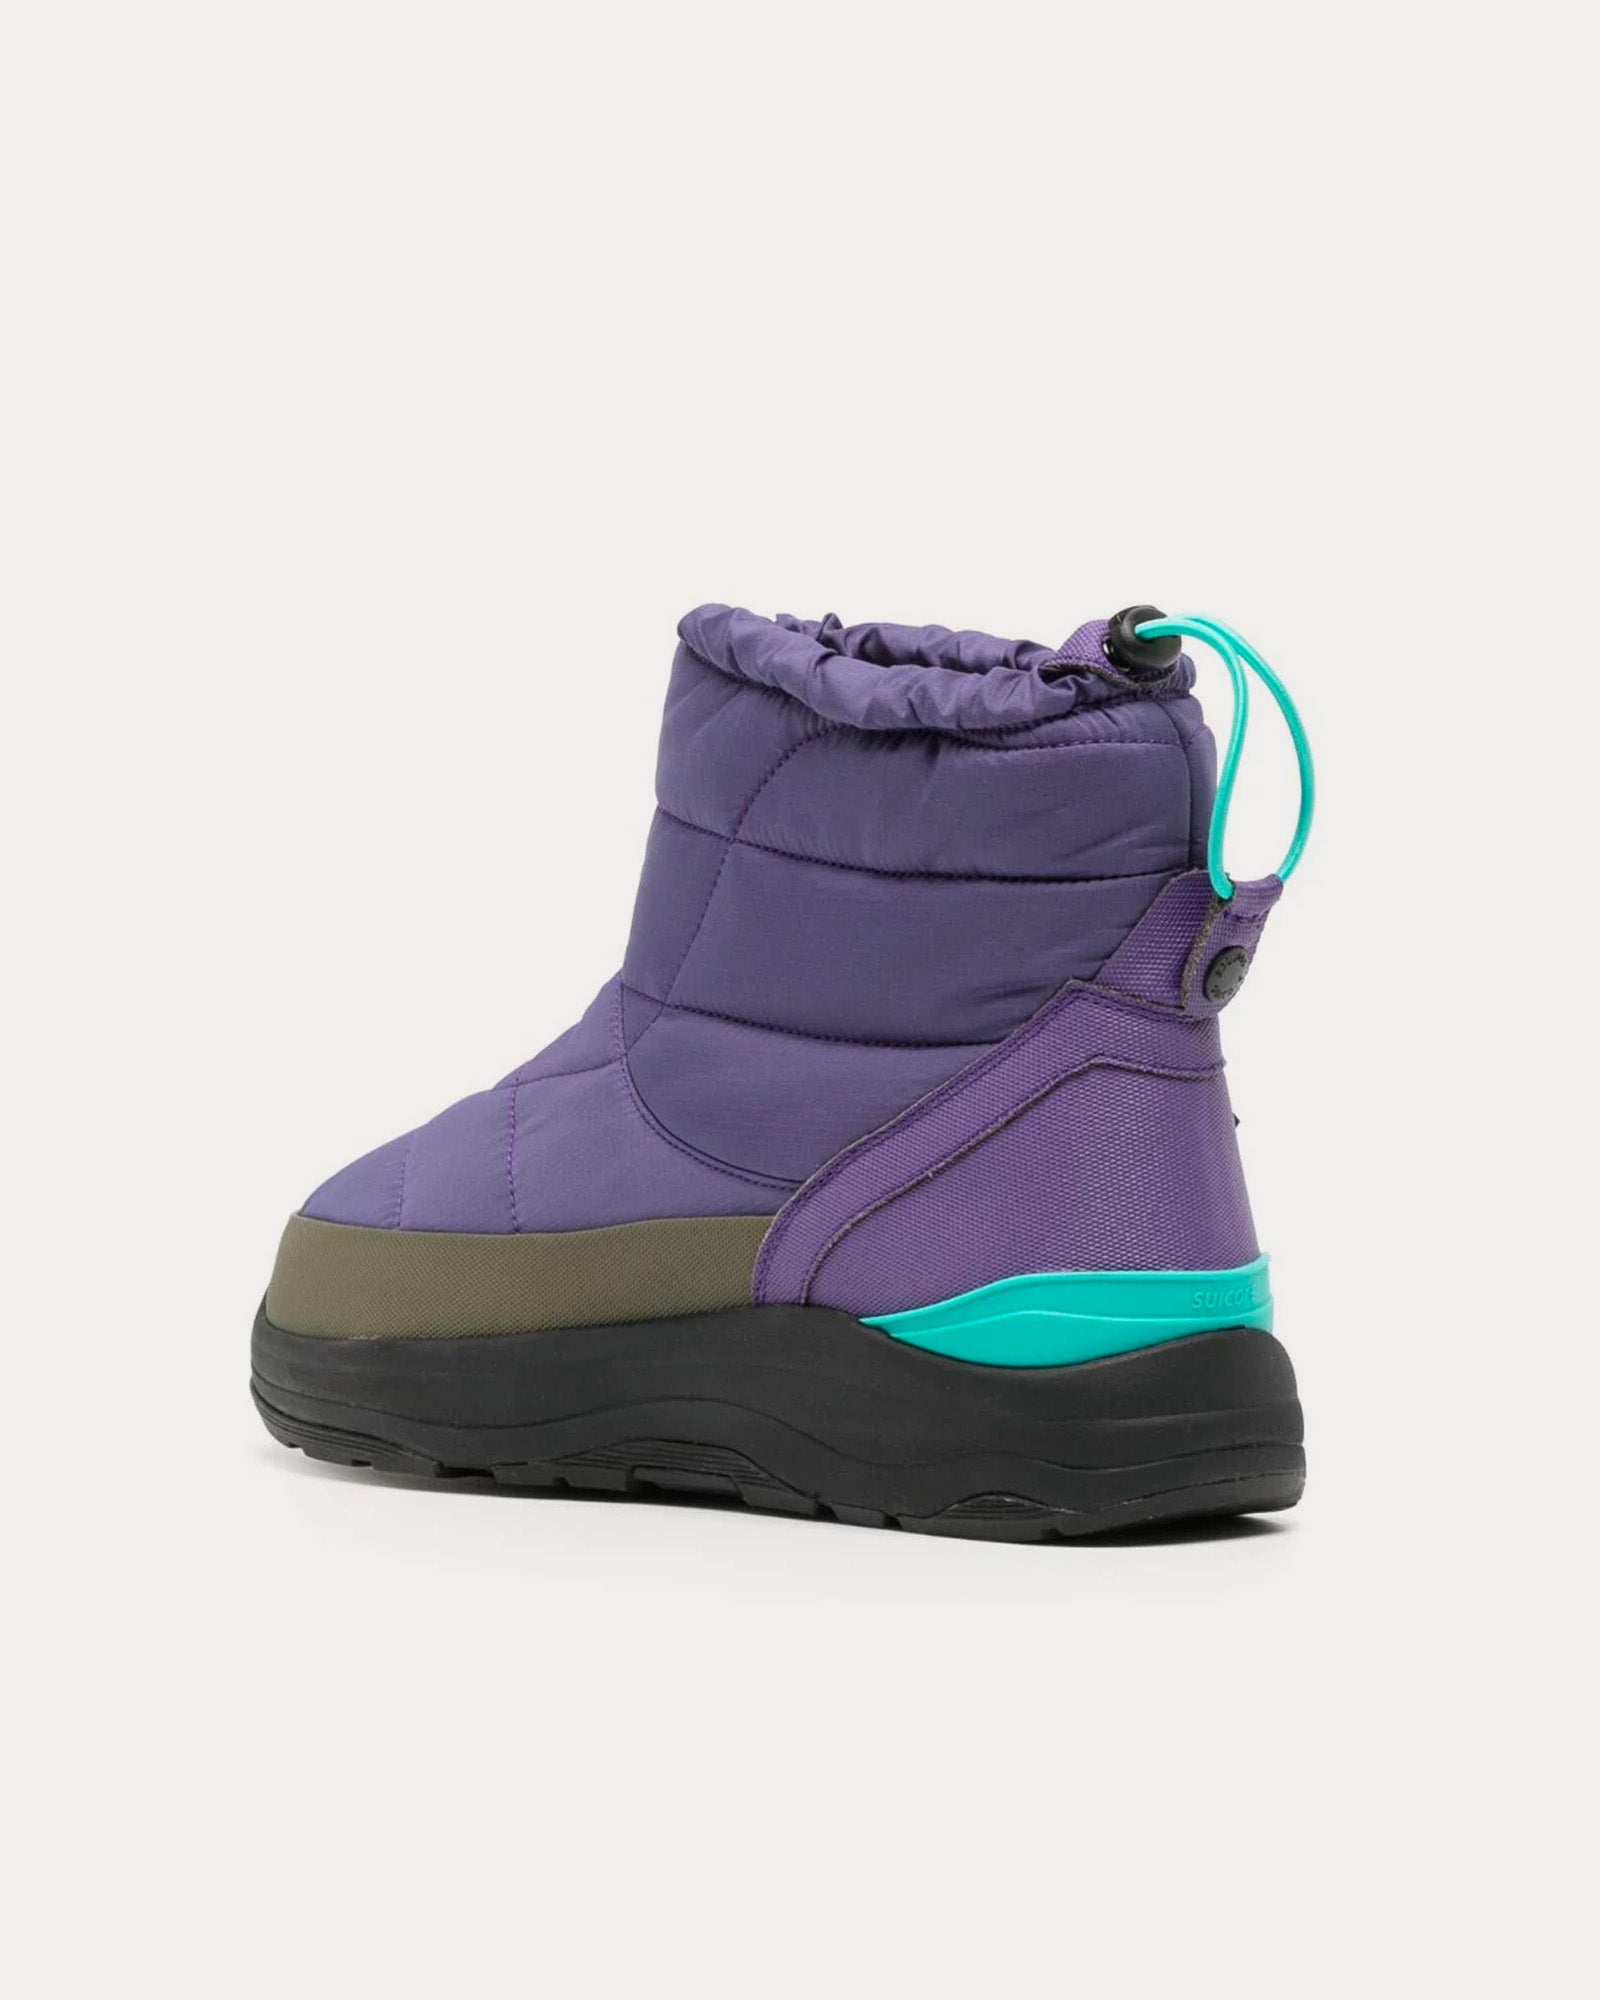 Suicoke - BOWER-evab Lavender Purple / Black Snow Boots